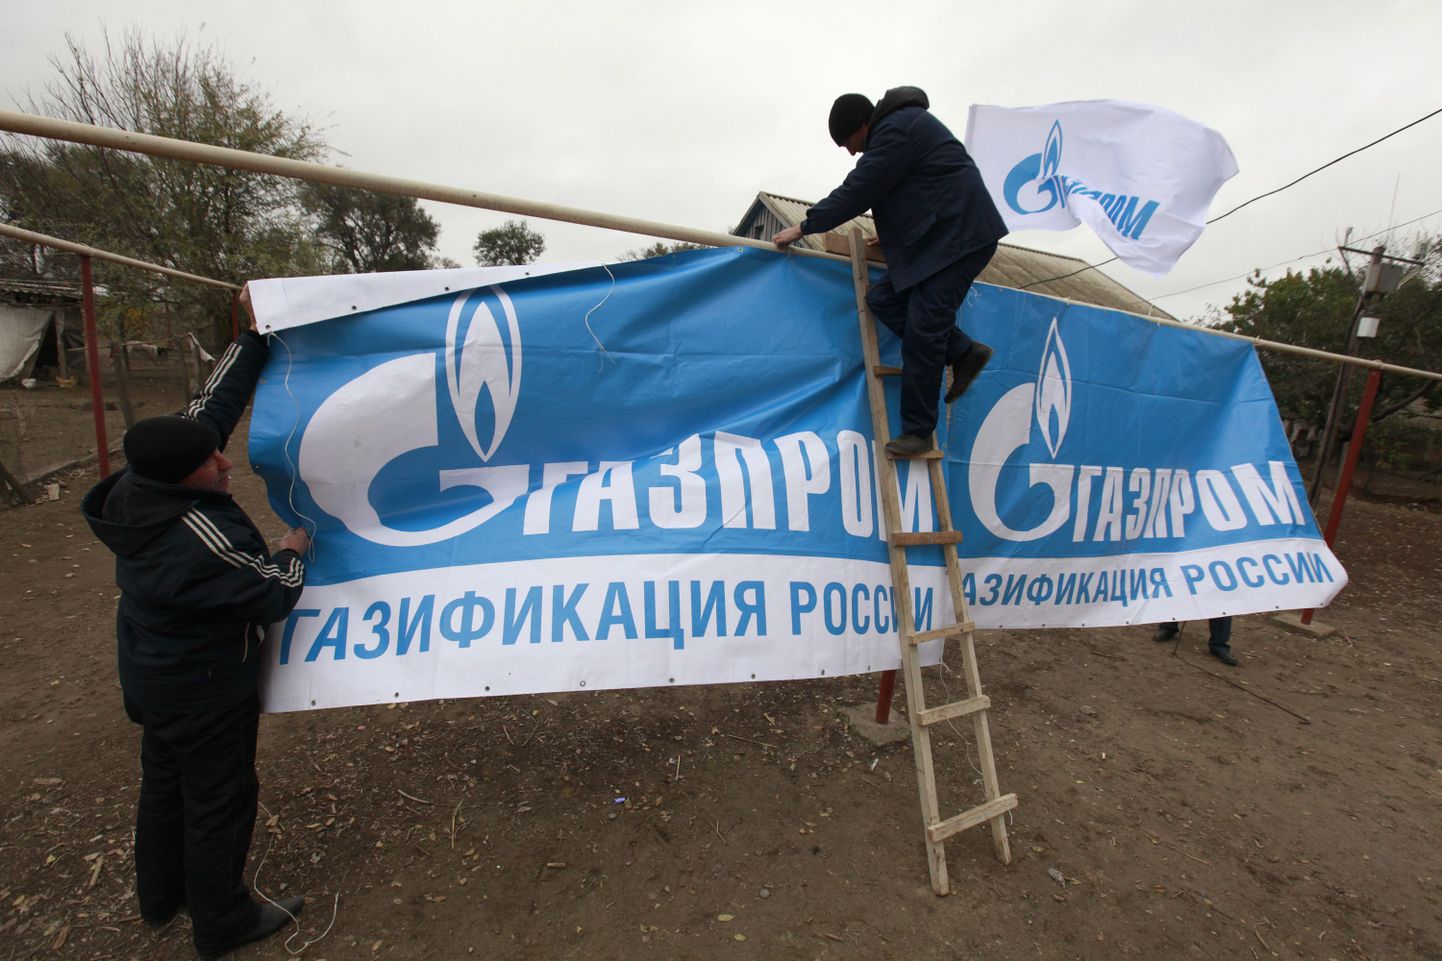 Gazprom punub Euroopas pikaajalist võrku.